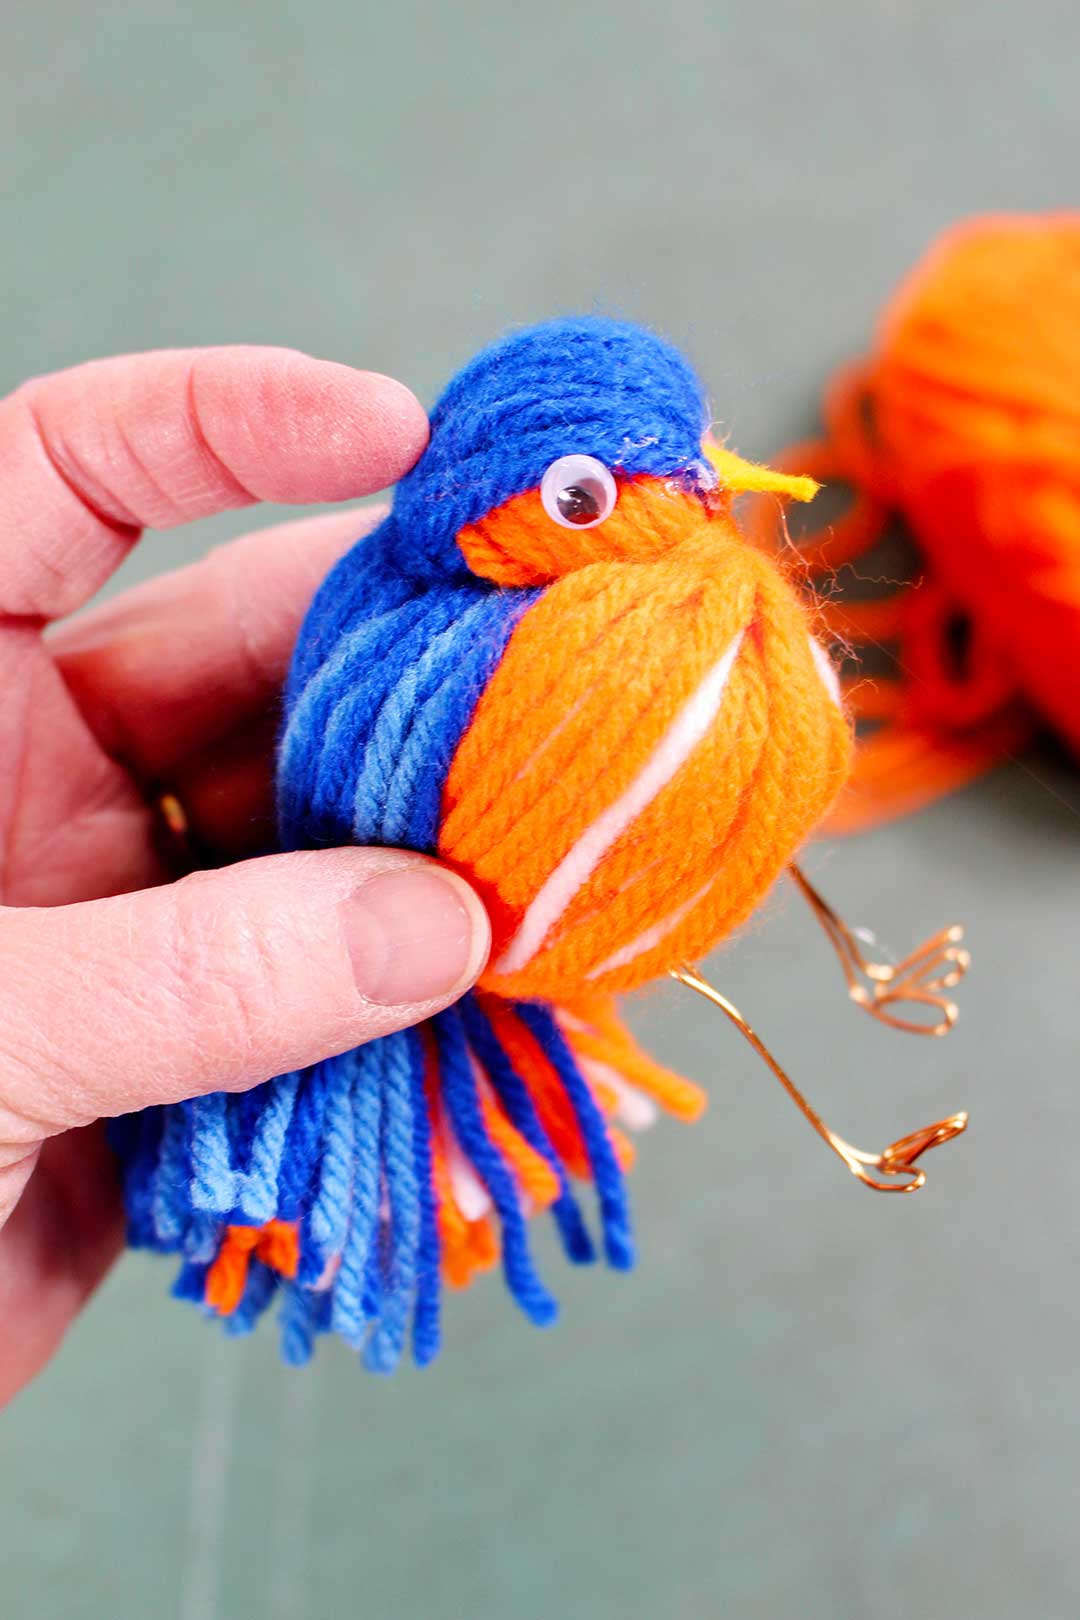 A googly eye hot glued to the head of a yarn bird.